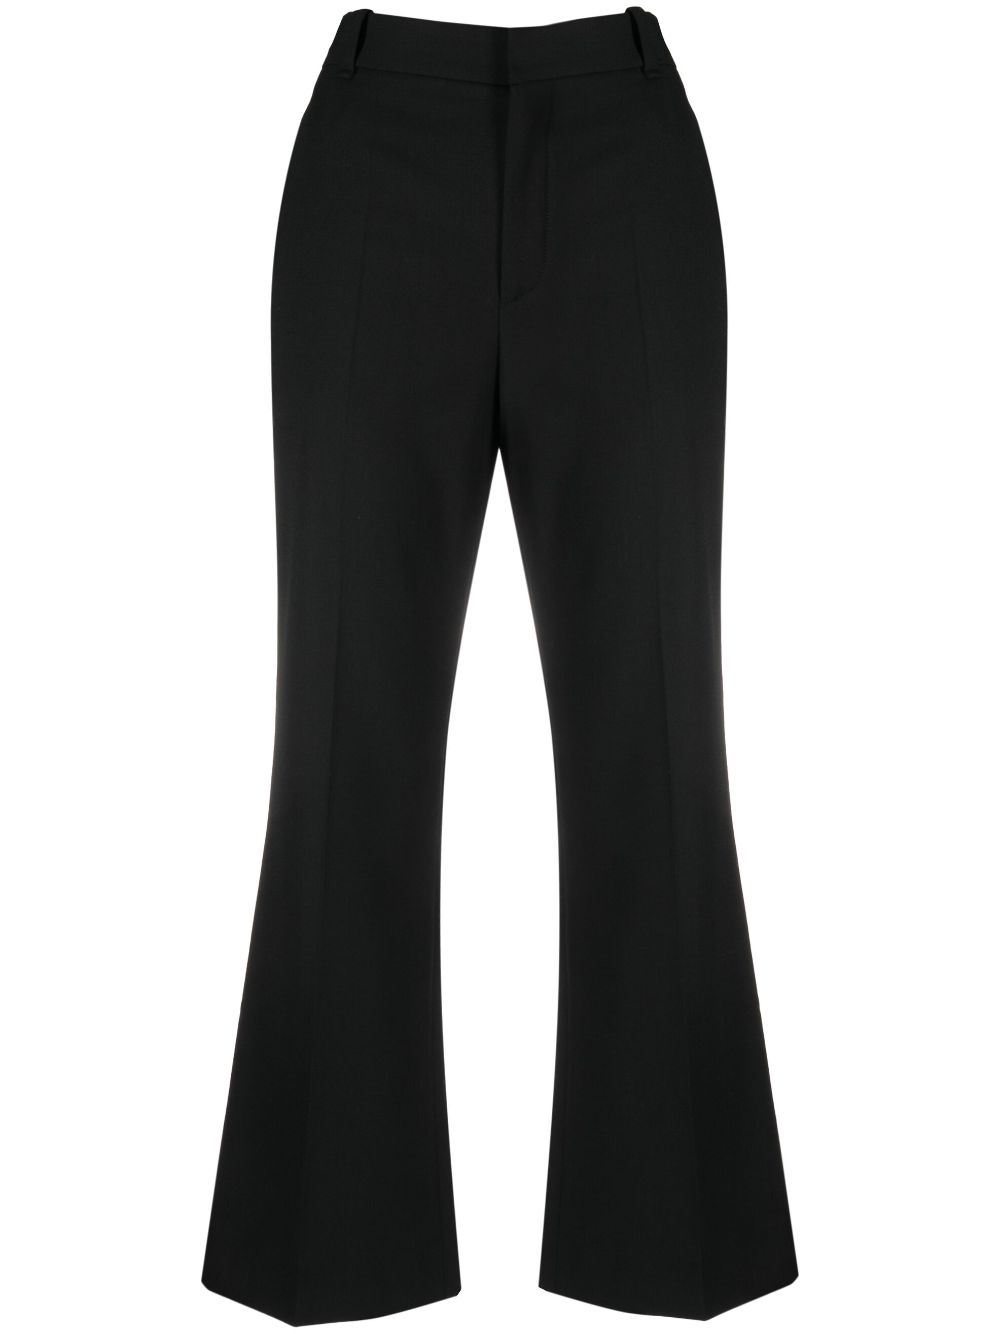 女款黑色羊毛混纺裤子 - FW23系列